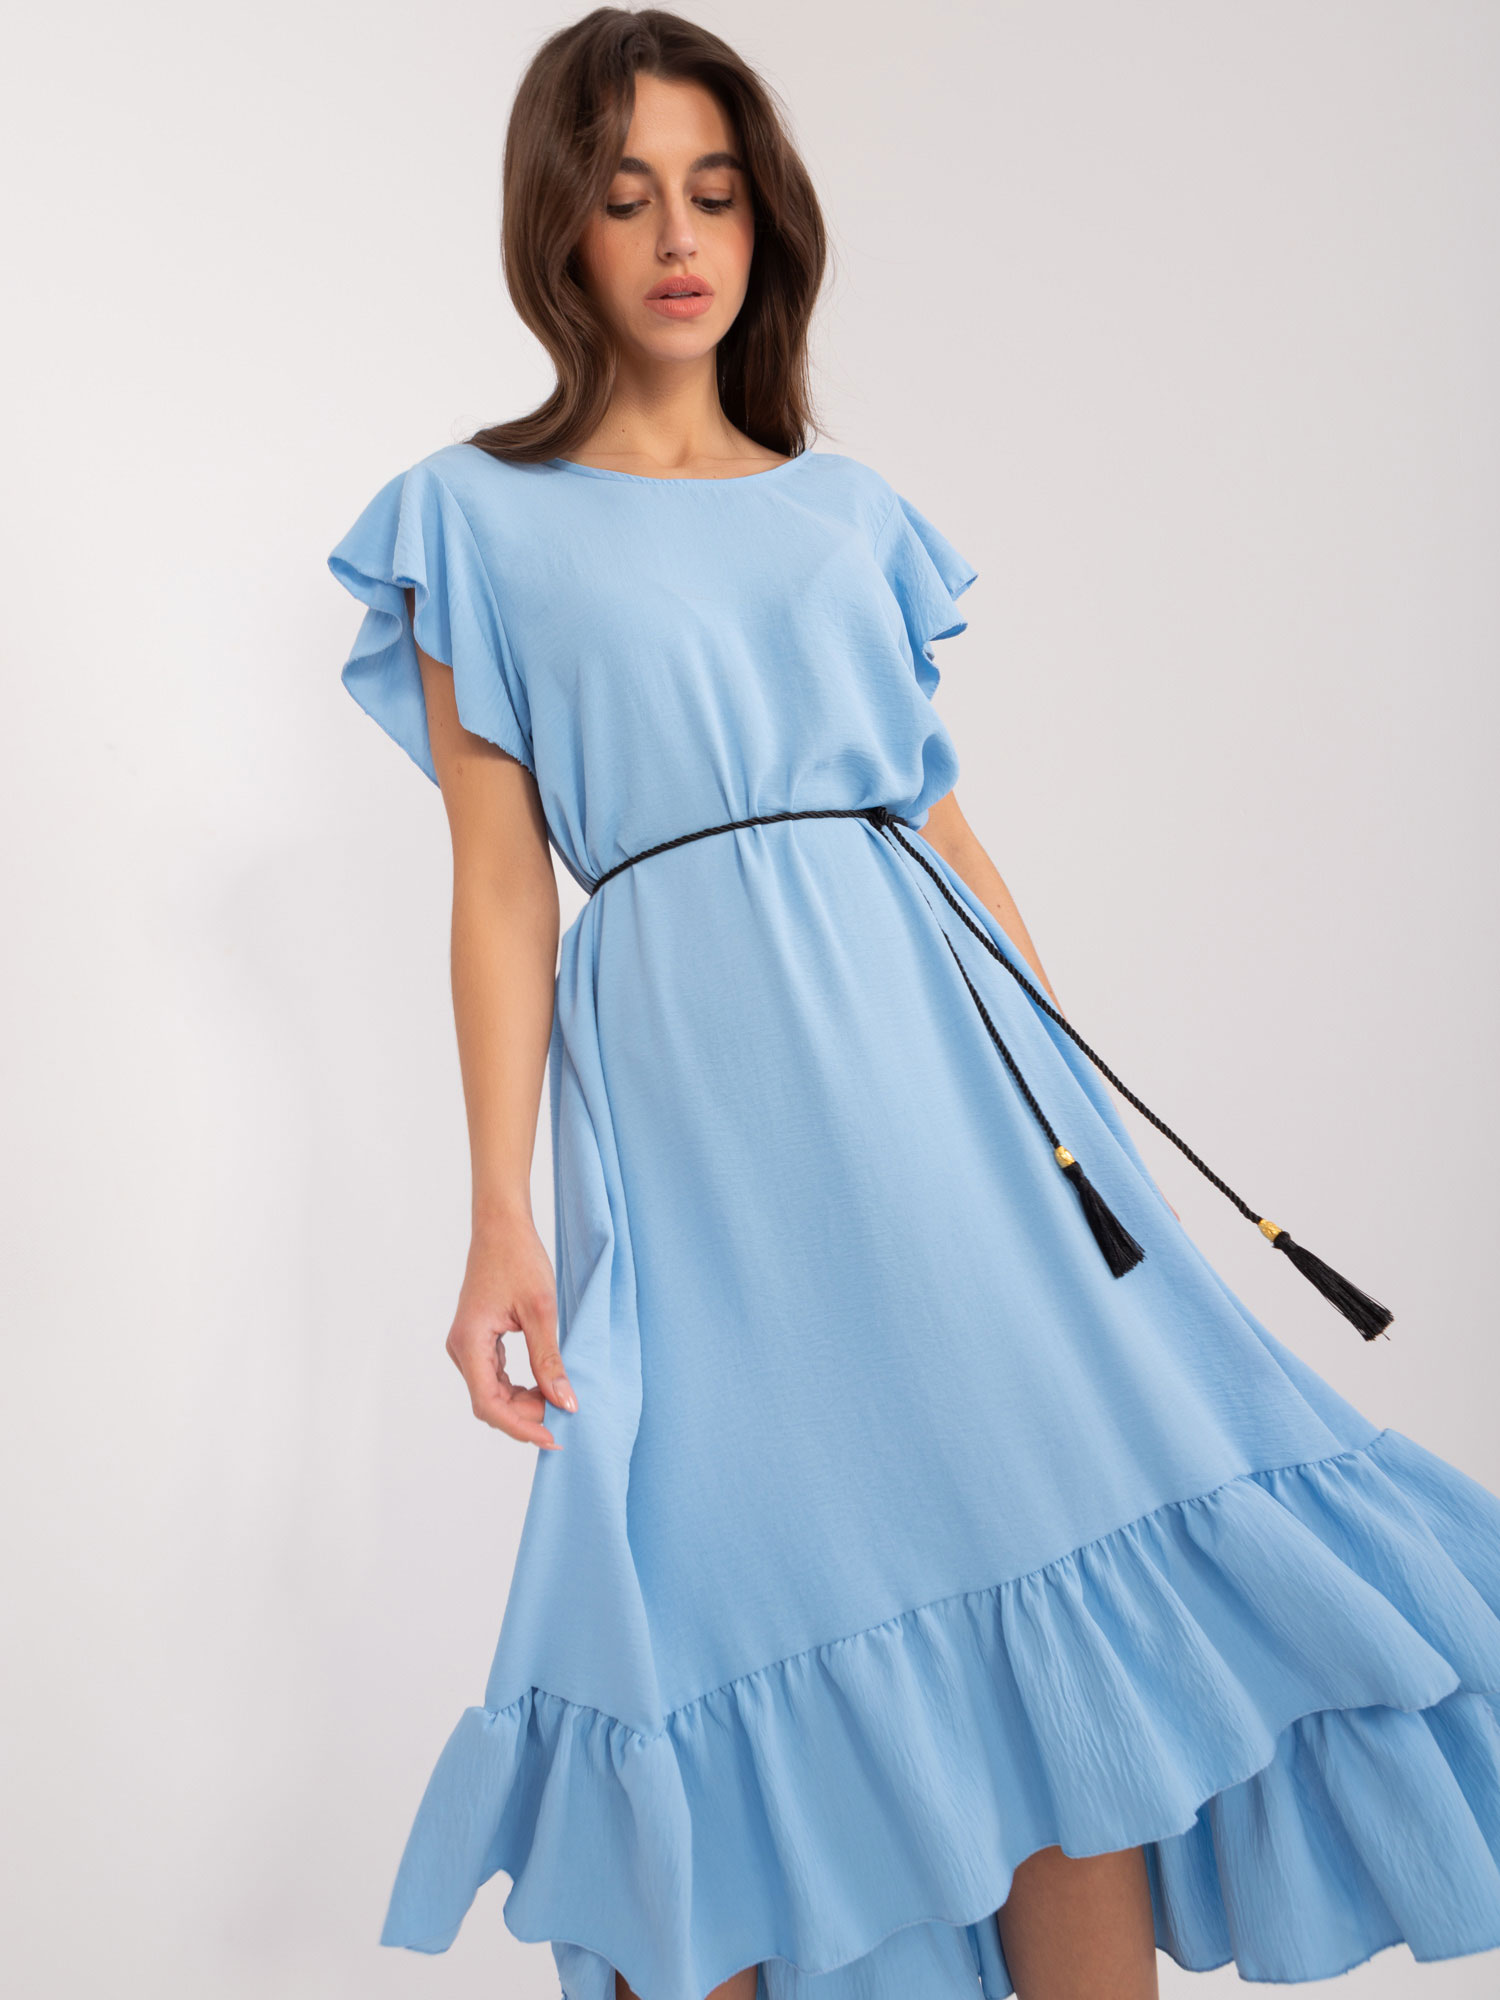 Light blue oversize dress with ruffles